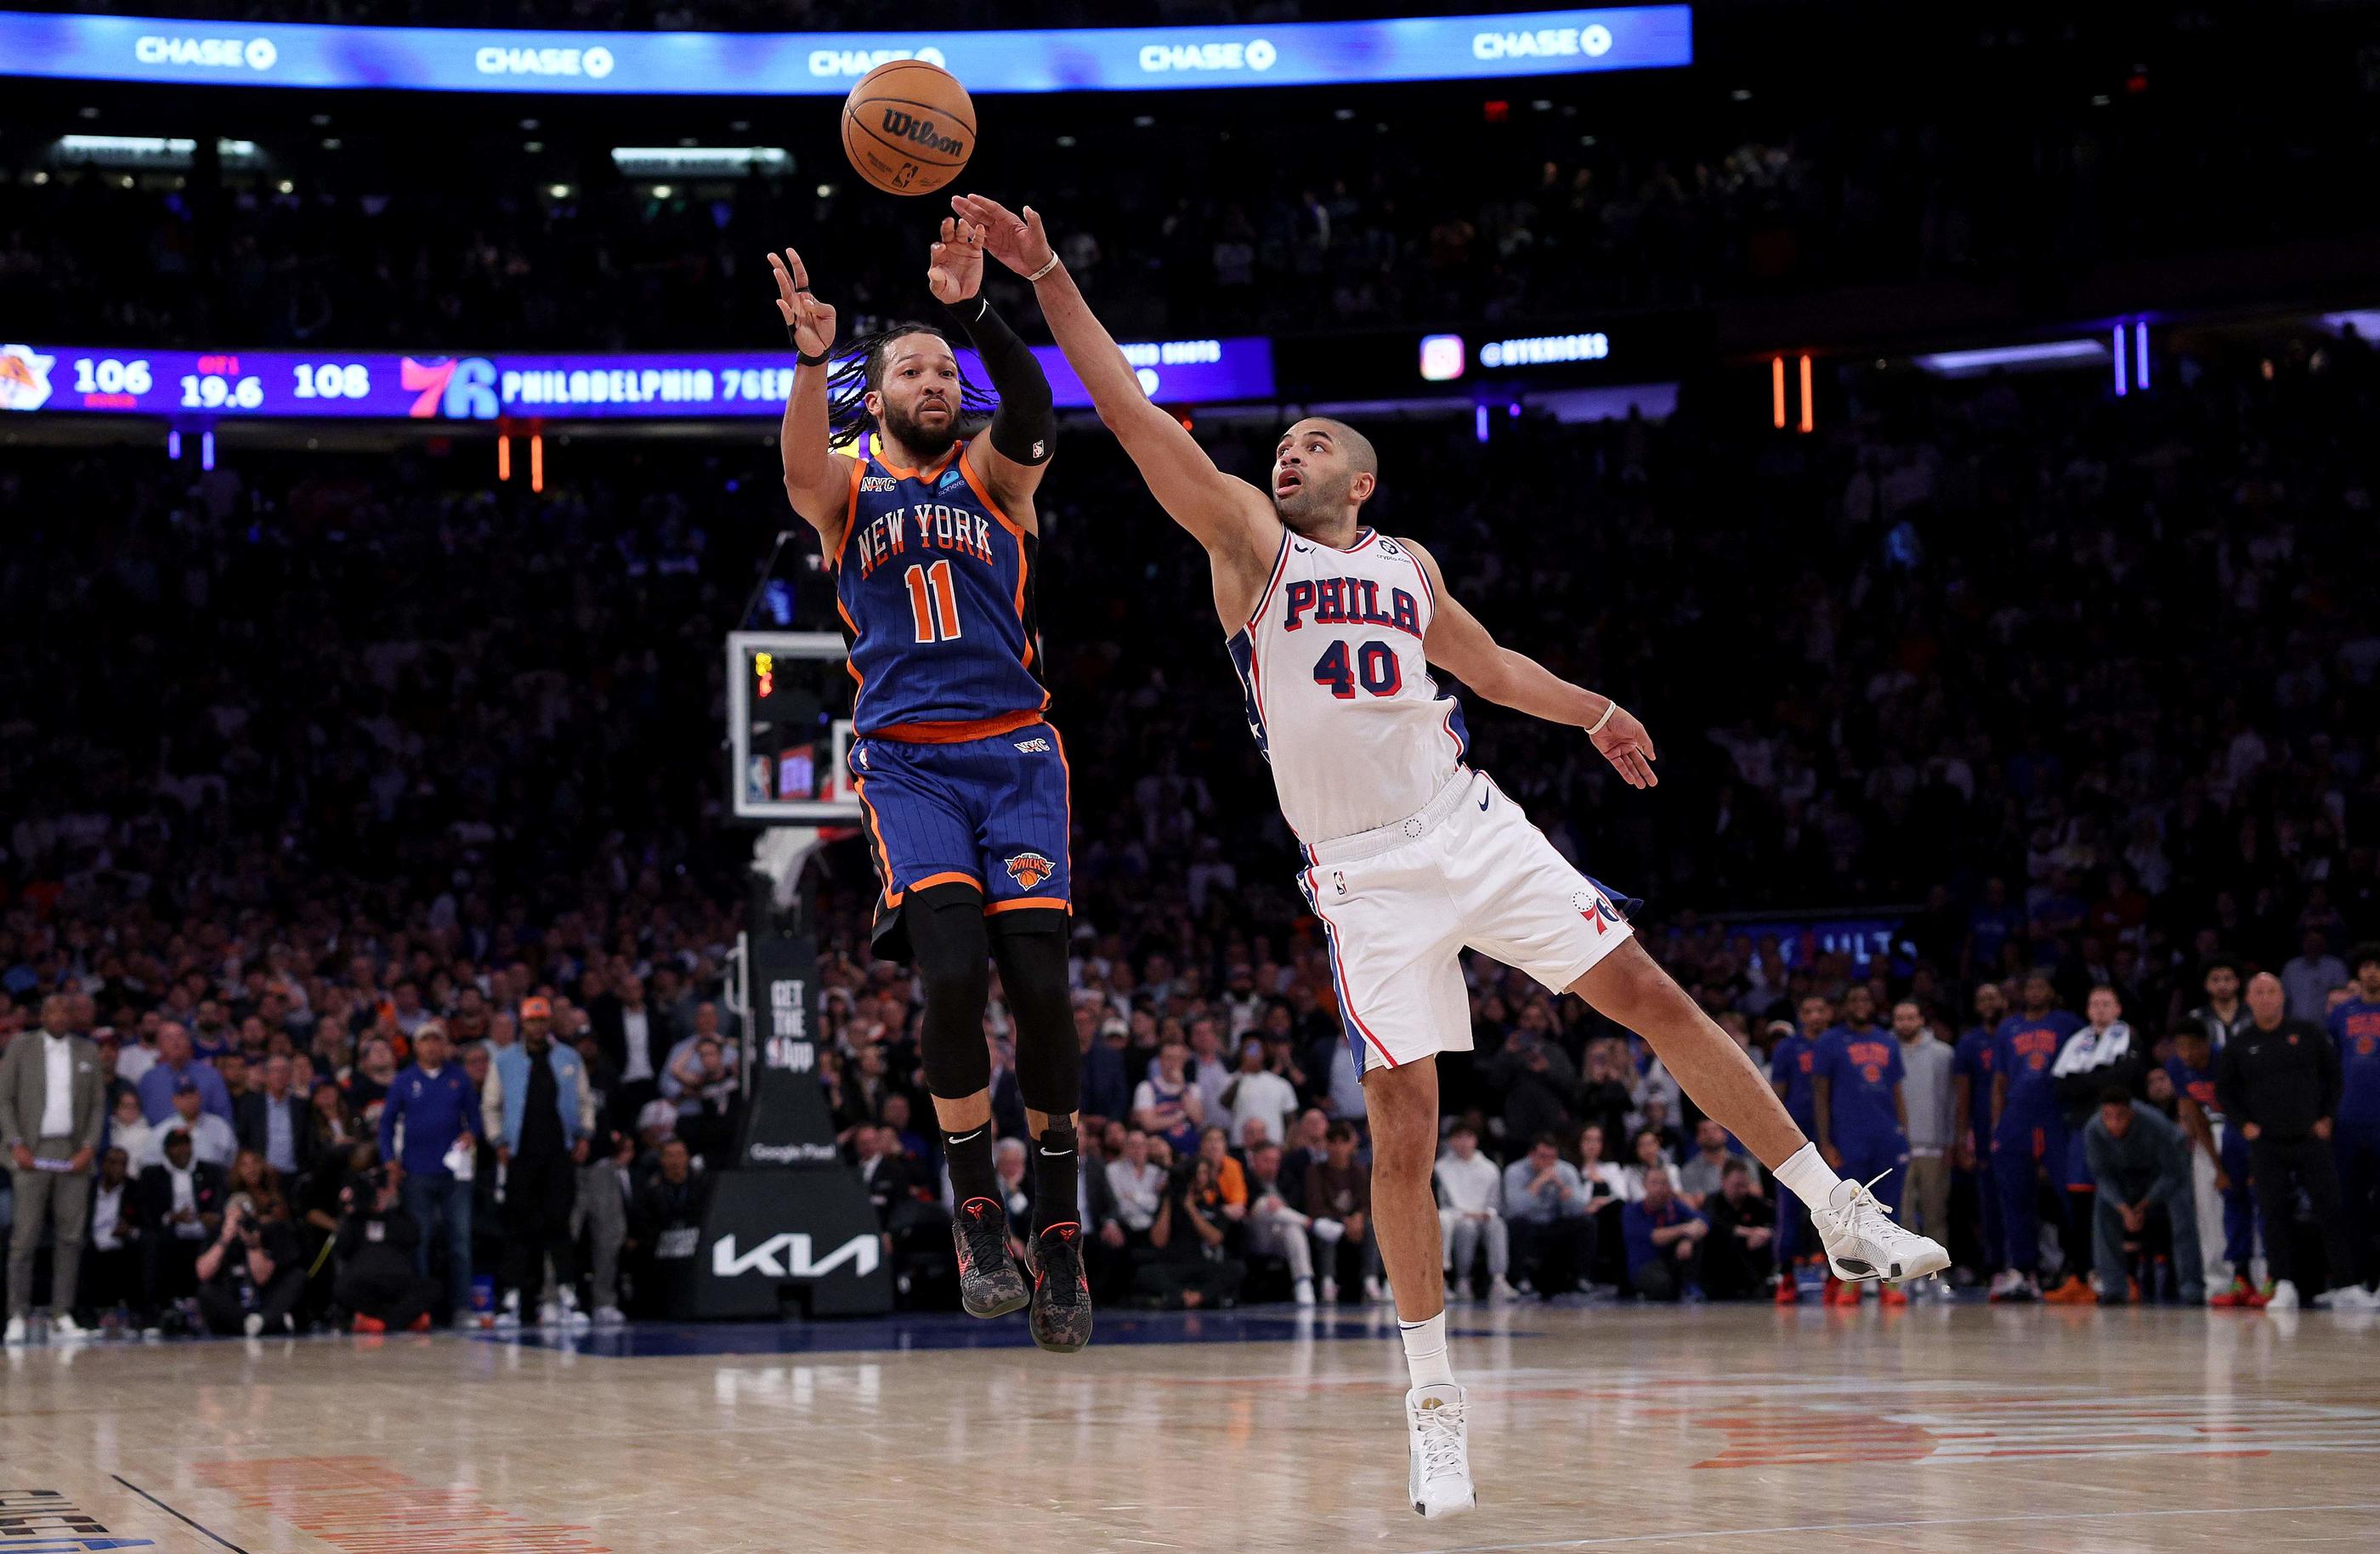 Malgré les 40 points du Newyorkais Jalen Brunson, le Philadelphie de Nicolas Batum (n°40) revient à 2-3 dans cette série du premier tour des playoffs NBA. Getty Images via AFP